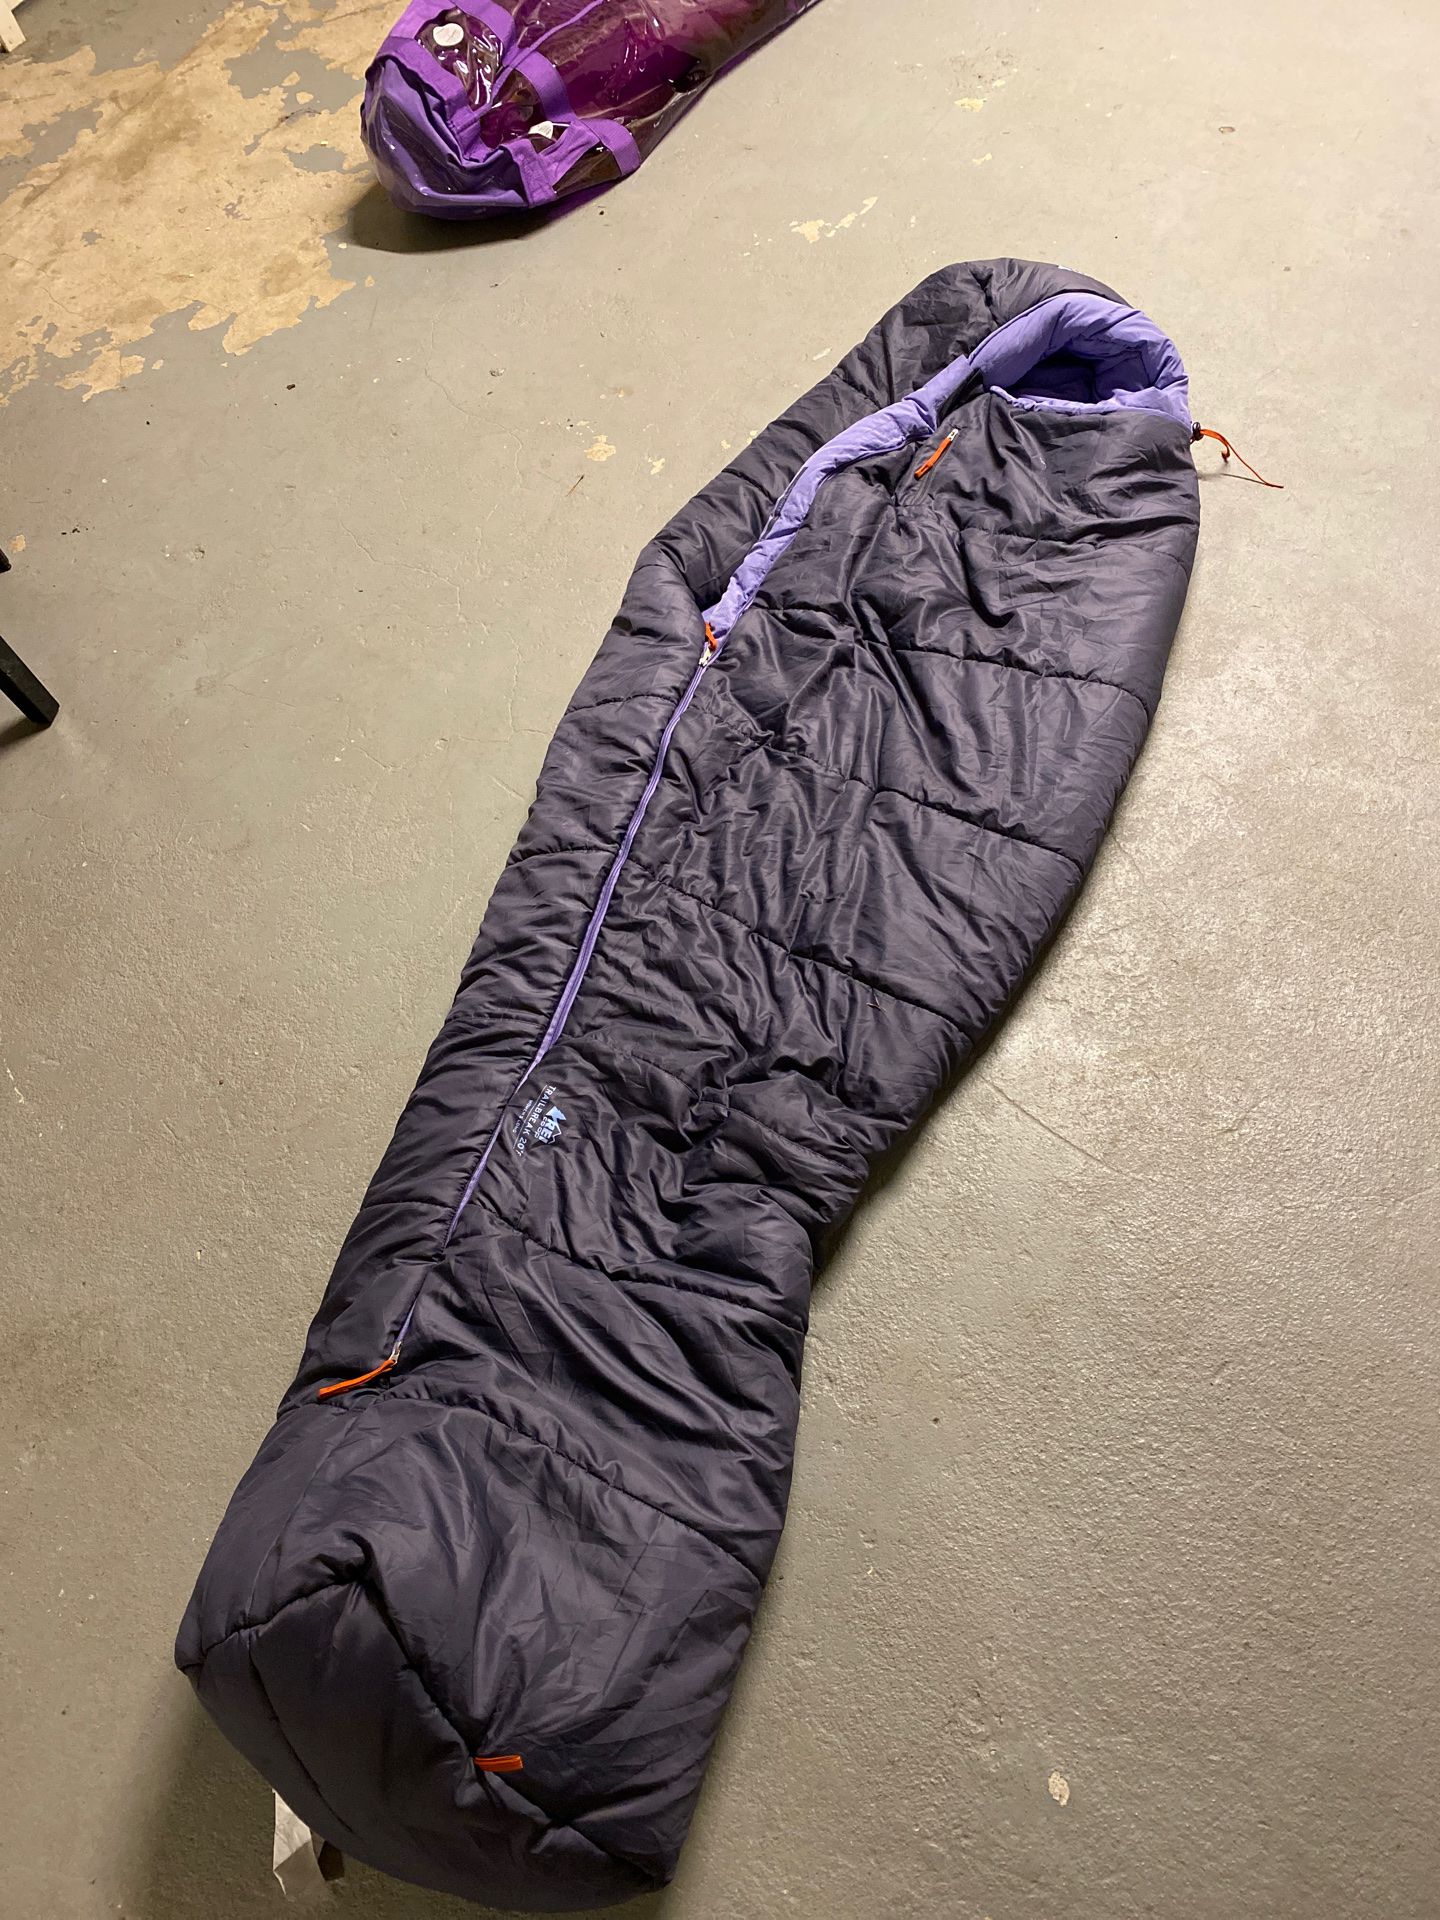 REI Trailbreak 20 degrees sleeping bag